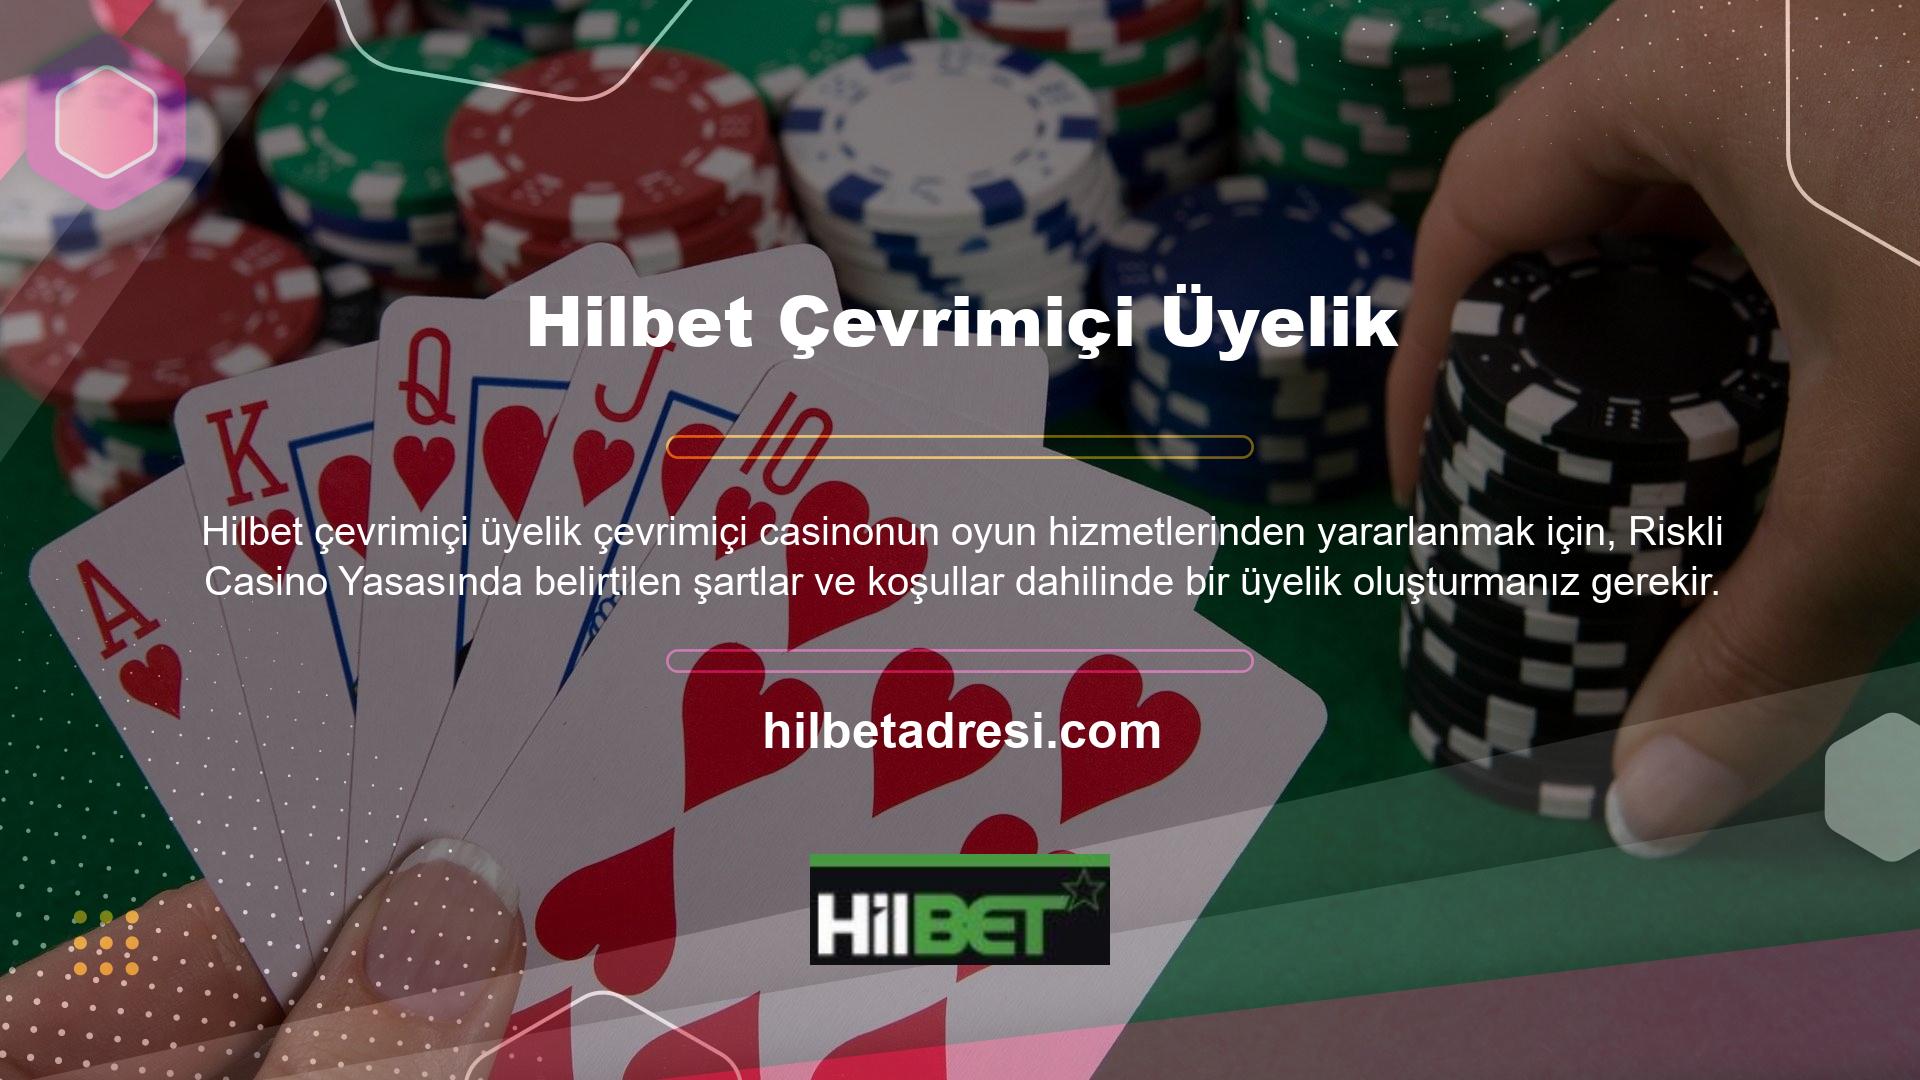 Hilbet Casino web sitesi, kullanıcılarına tüm oyun hizmetlerini tek üyelik hesabı üzerinden sunmaktadır